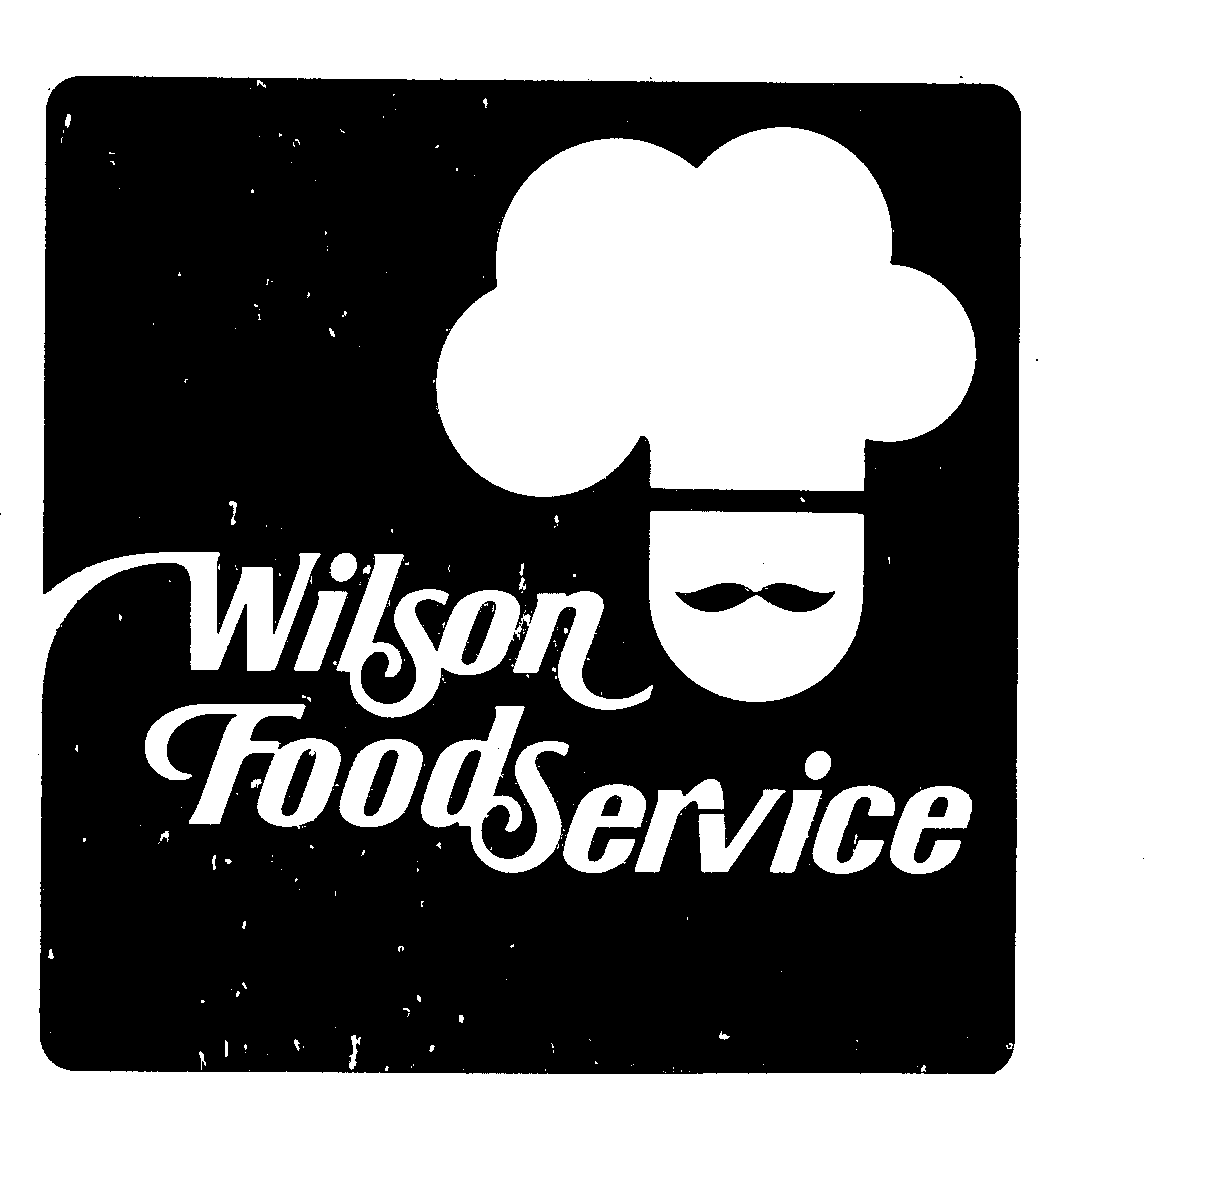  WILSON FOODS SERVICE